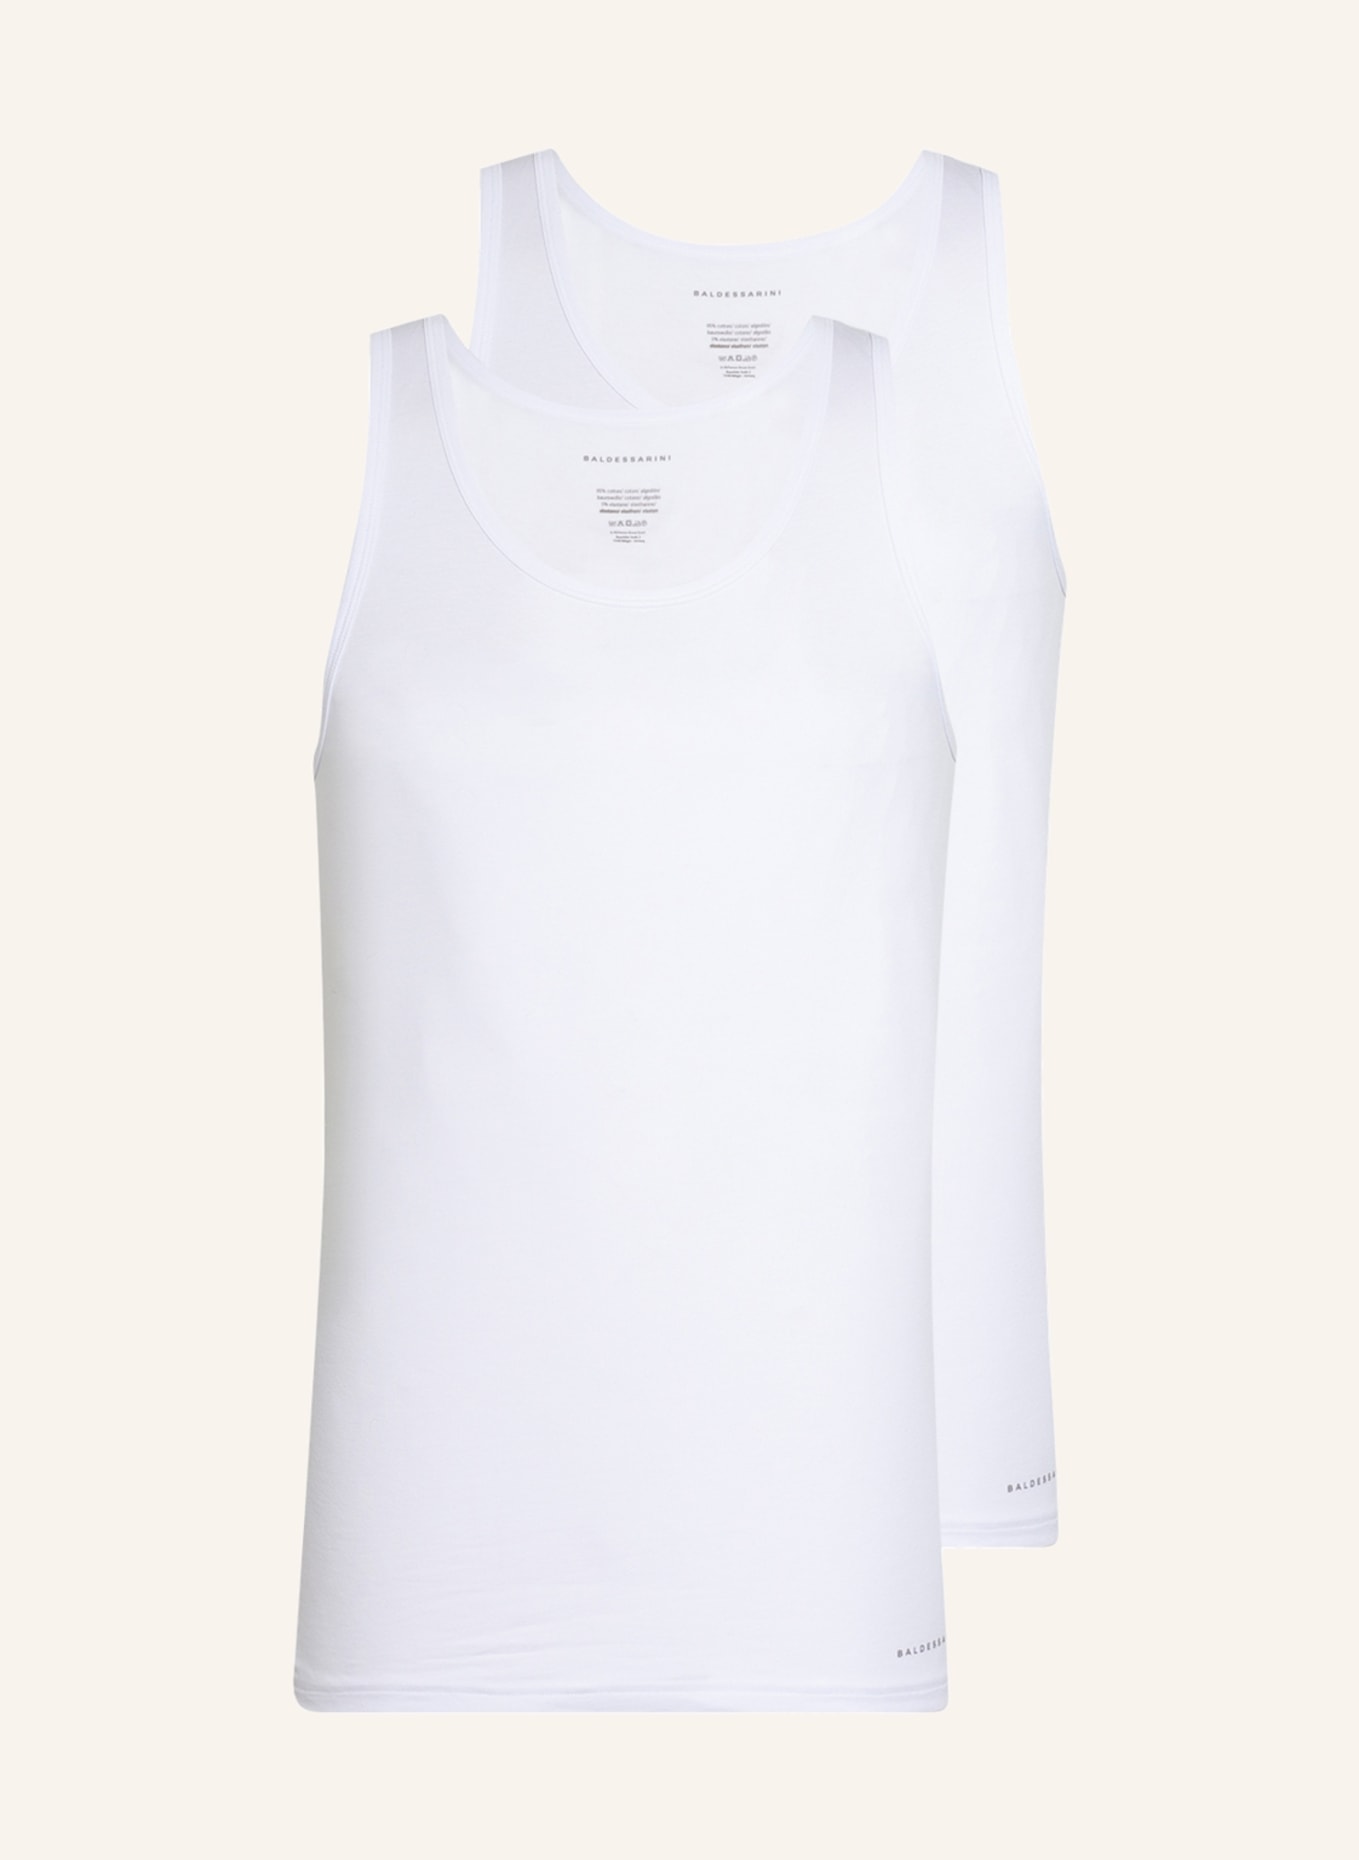 BALDESSARINI 2-pack Undershirts , Color: WHITE (Image 1)